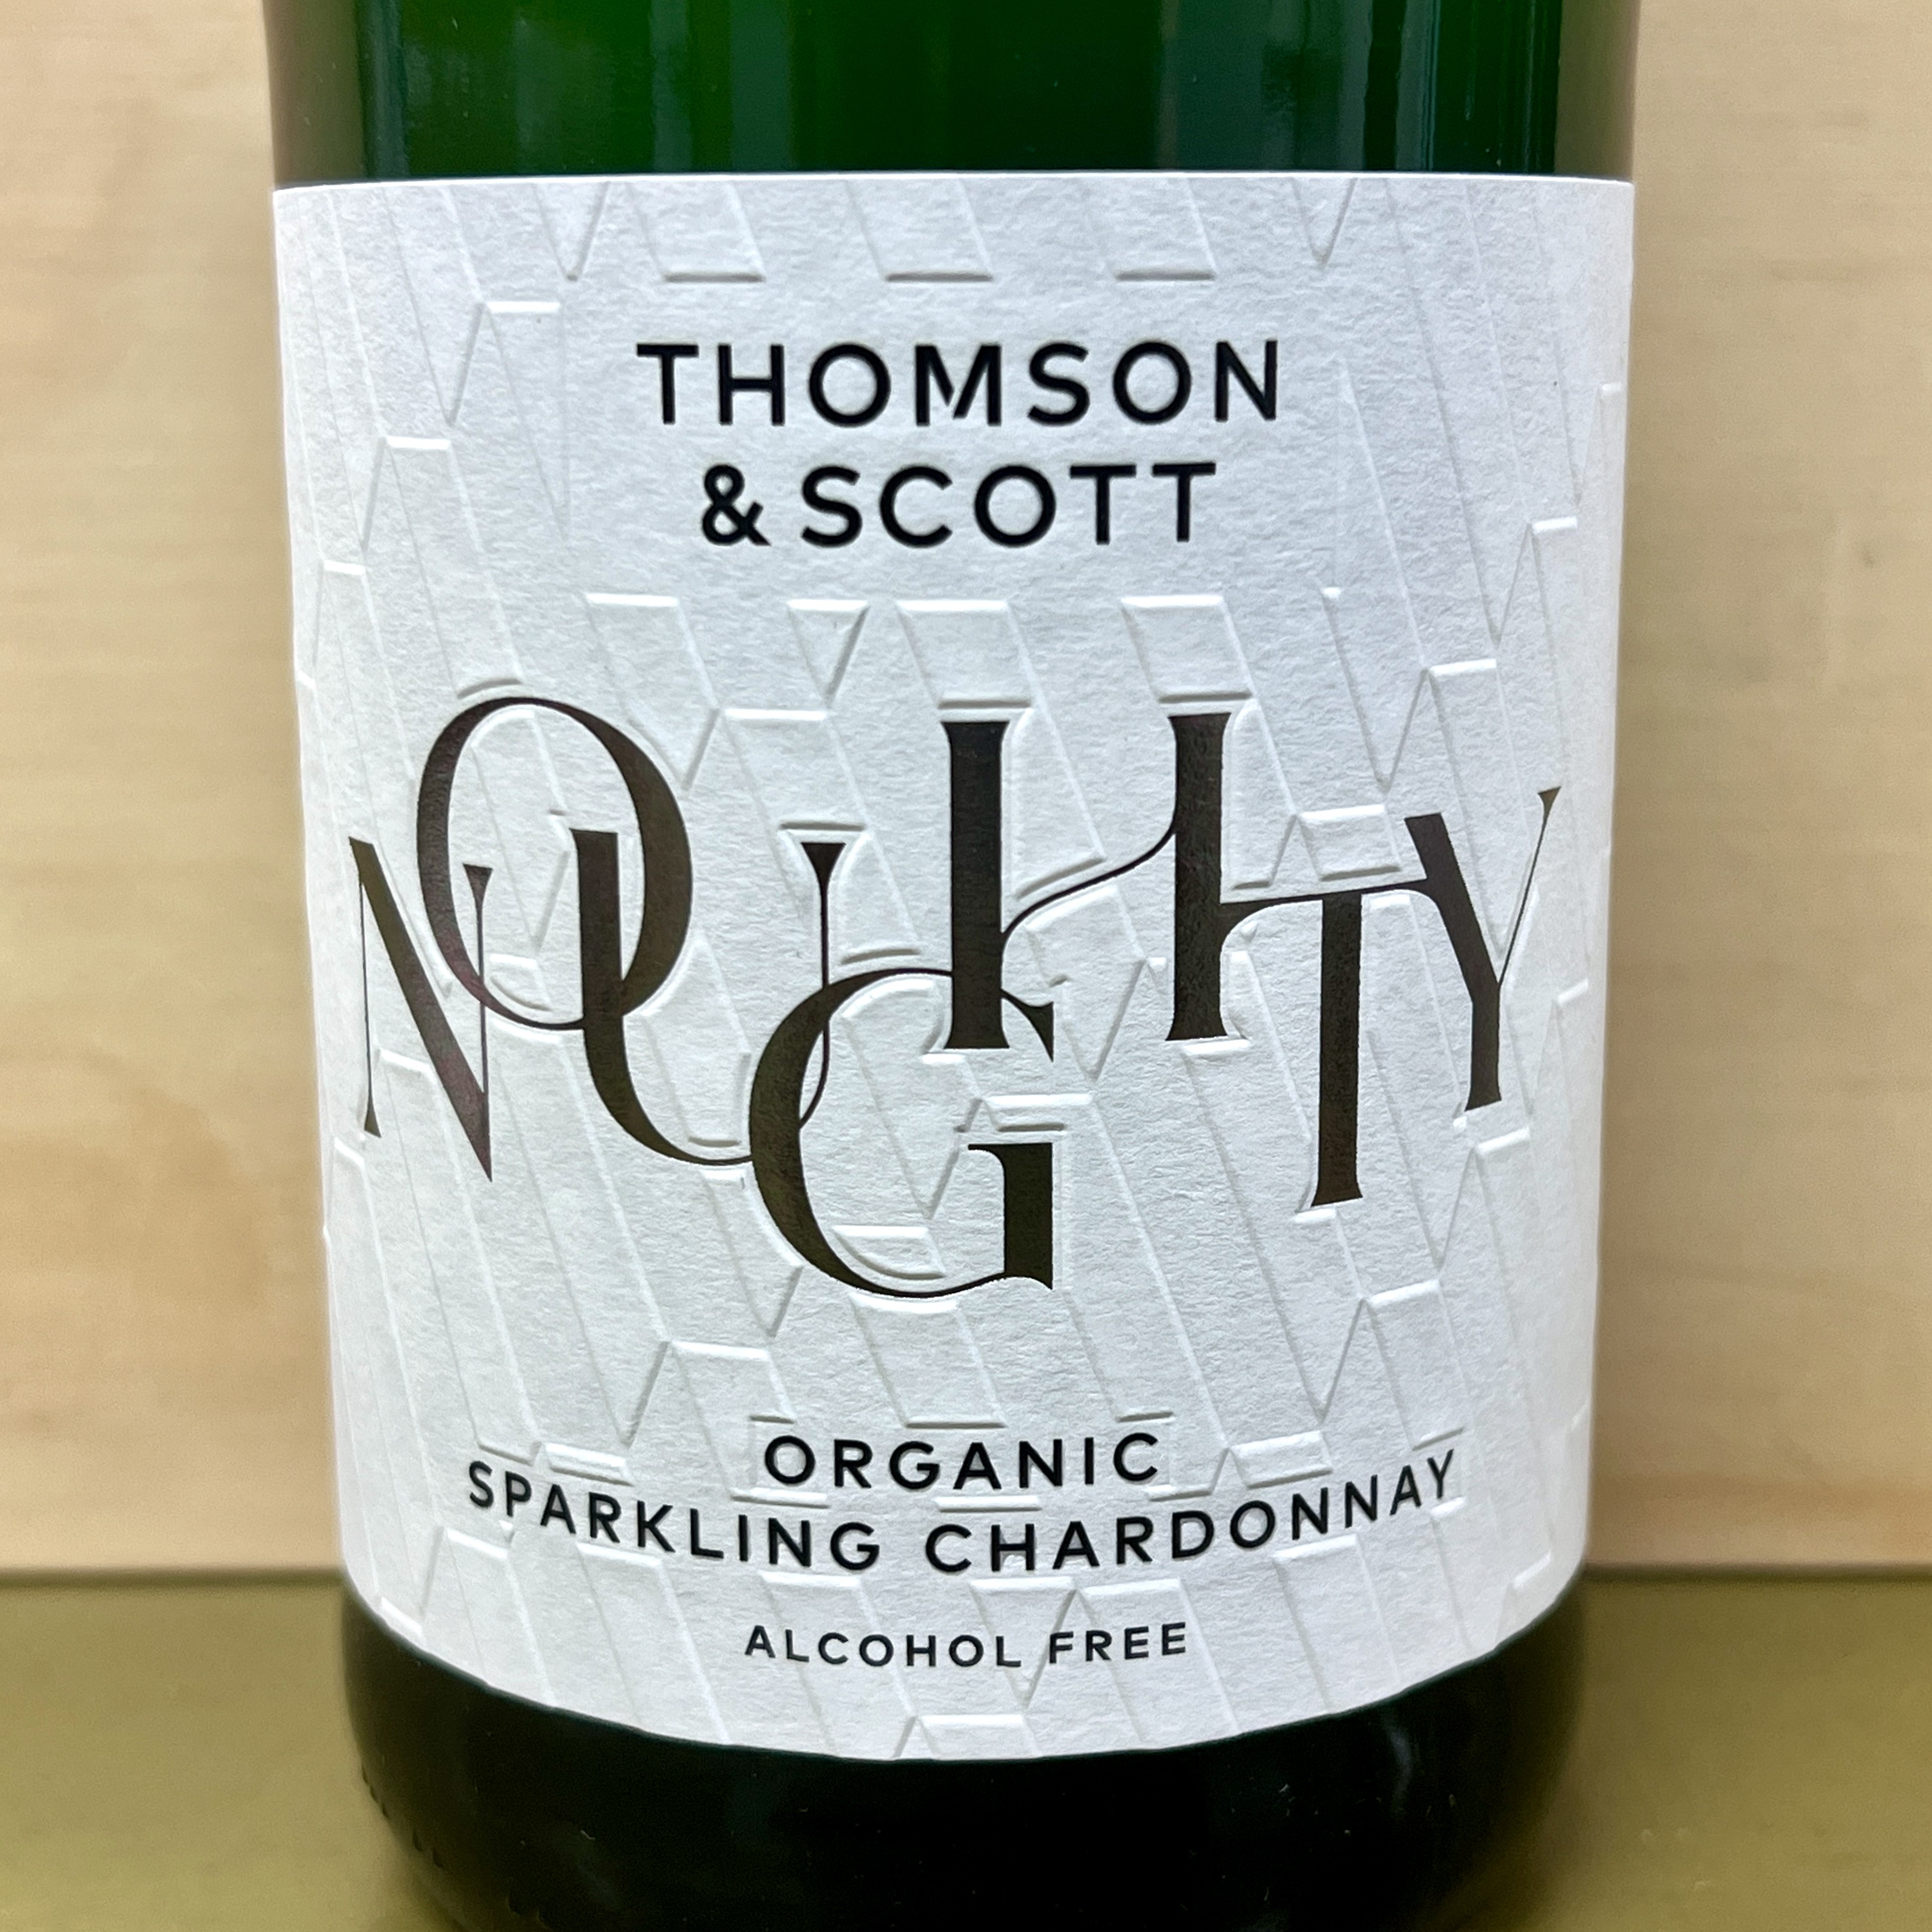 Thomson & Scott Noughty Organic Sparkling Chardonnay